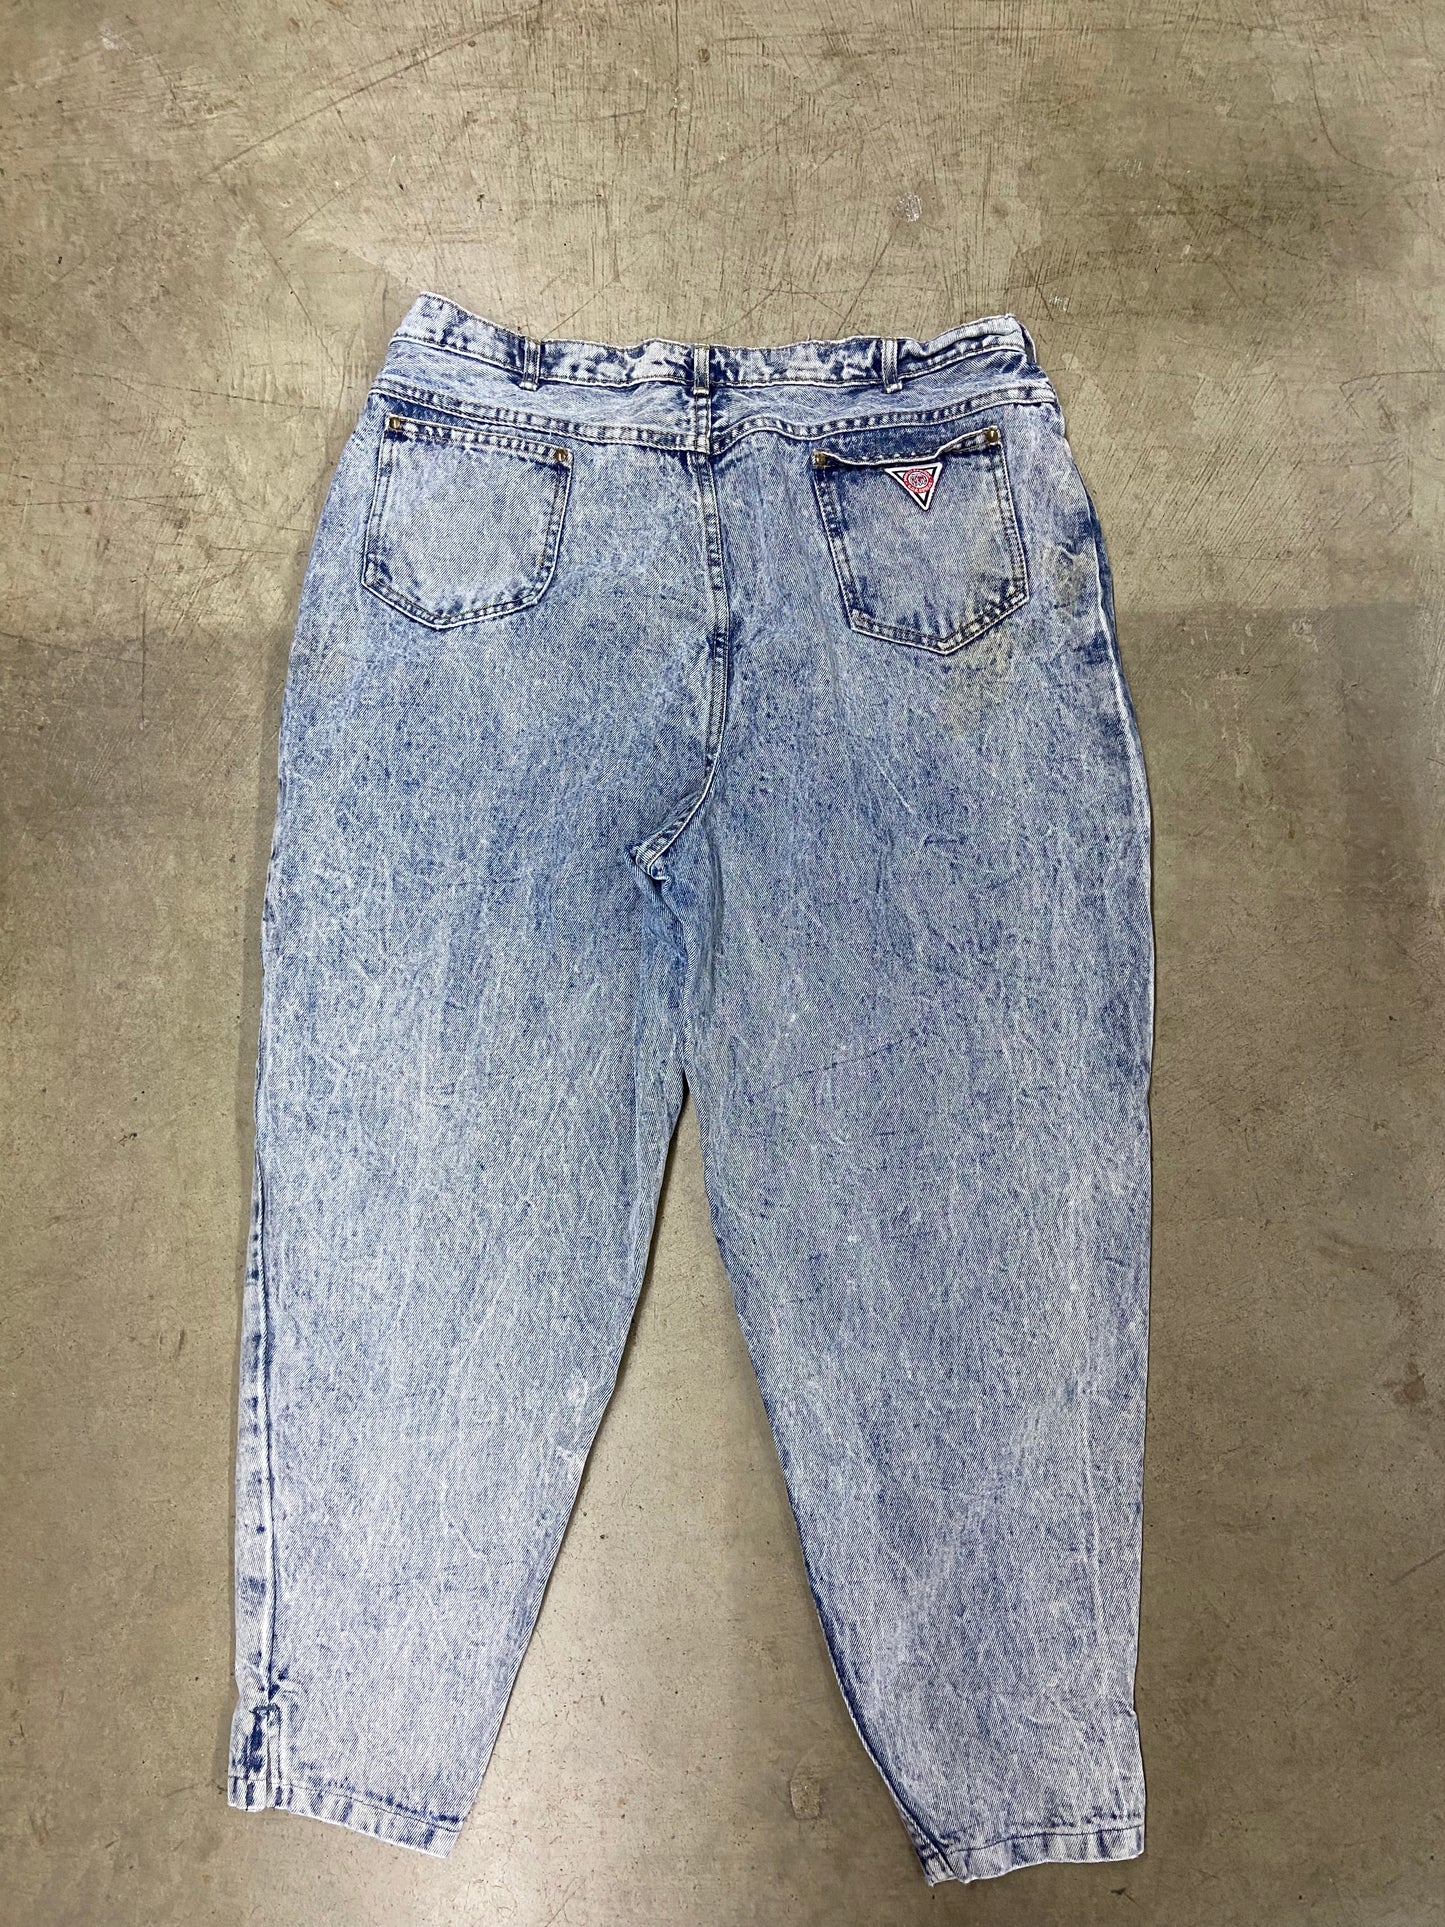 VTG G.O.B Geneva Acid Washed Jeans Sz 36x31